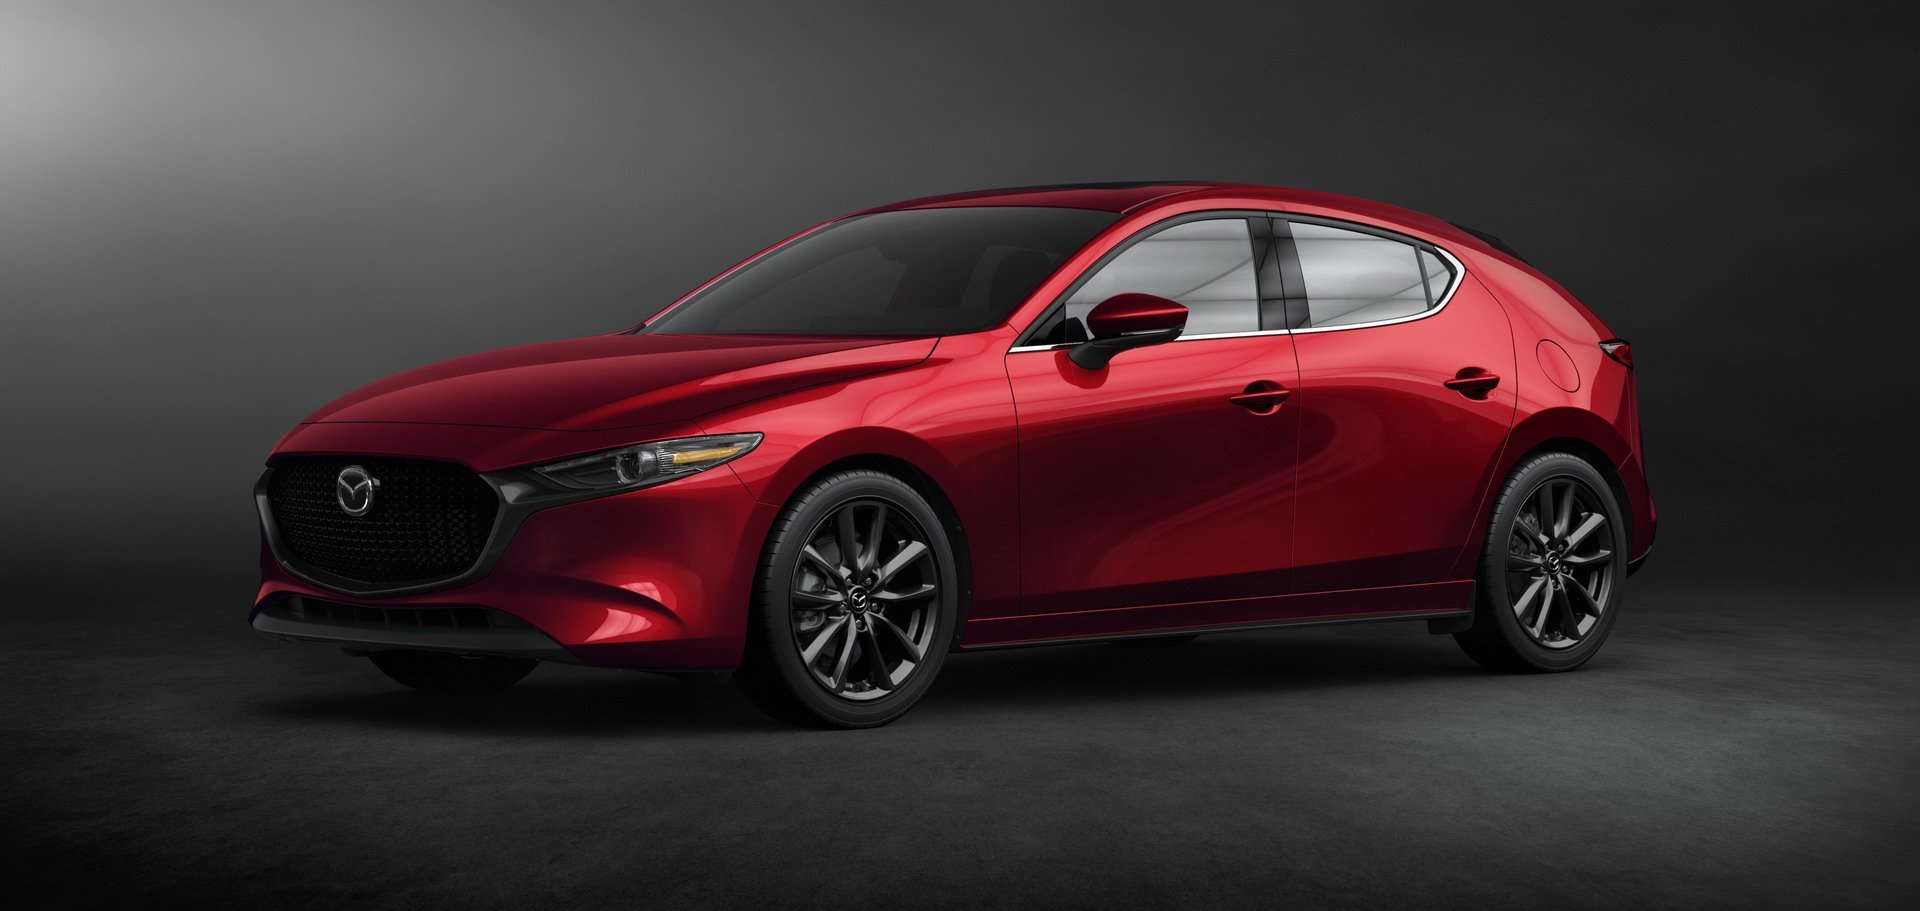 Nová Mazda 3